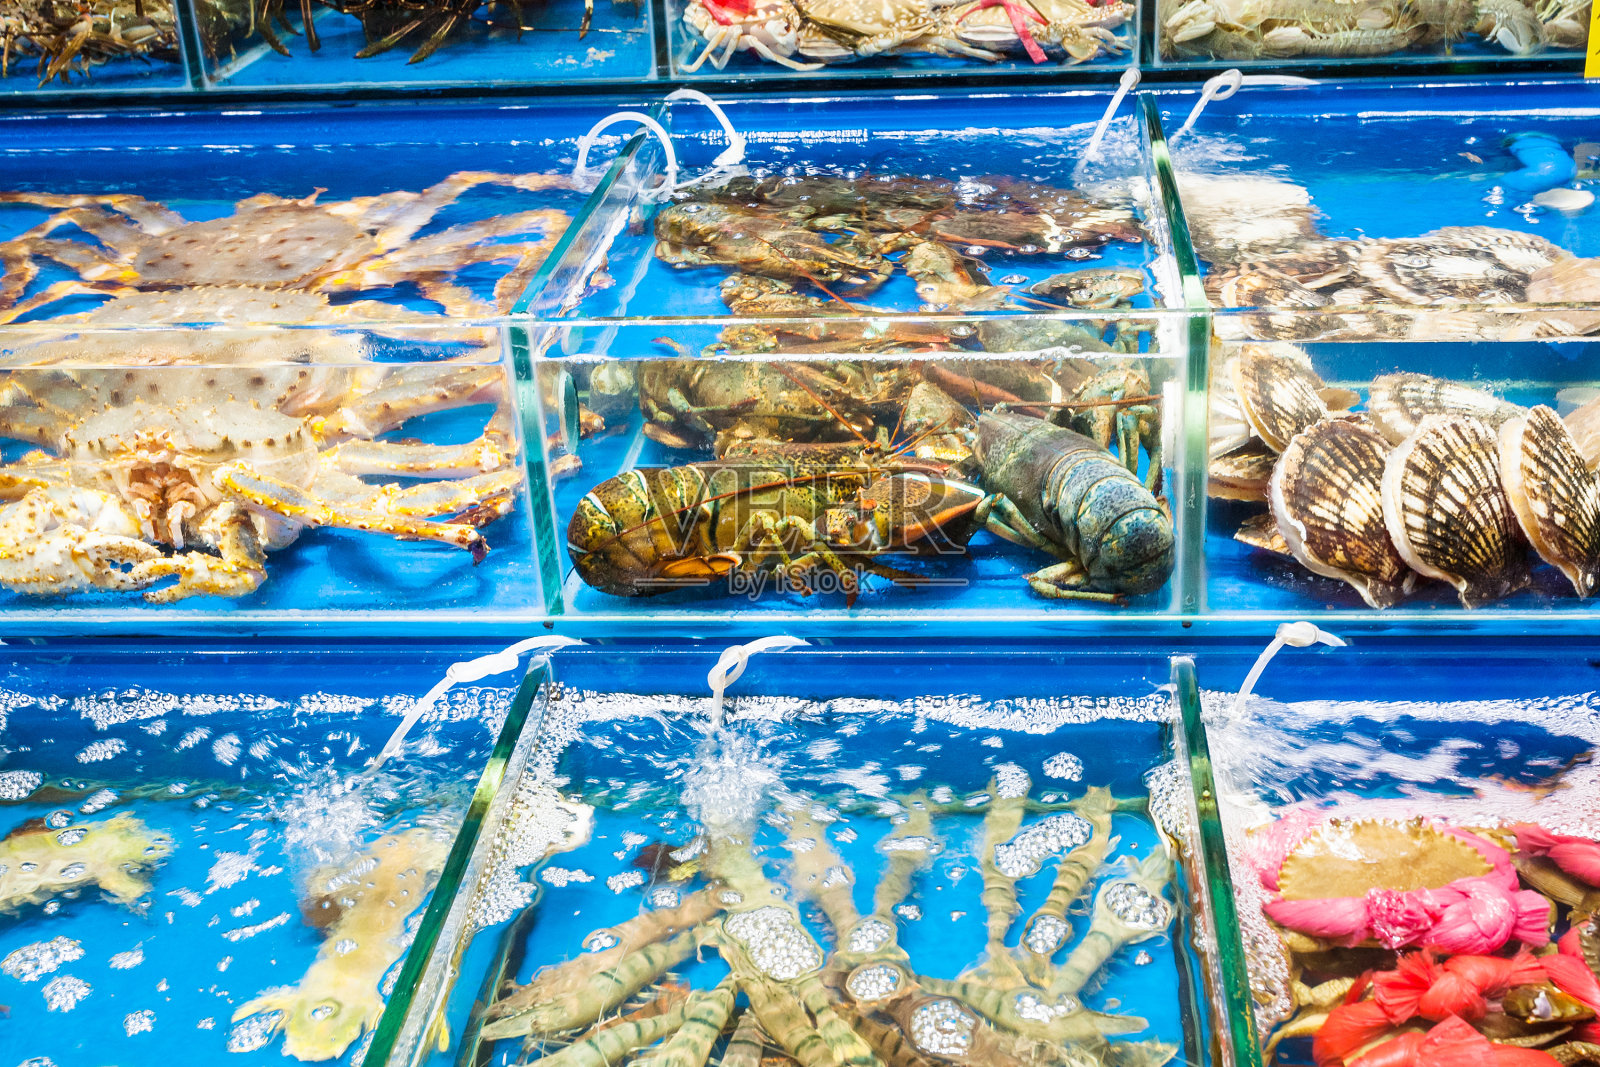 广州鱼市的螃蟹、扇贝照片摄影图片